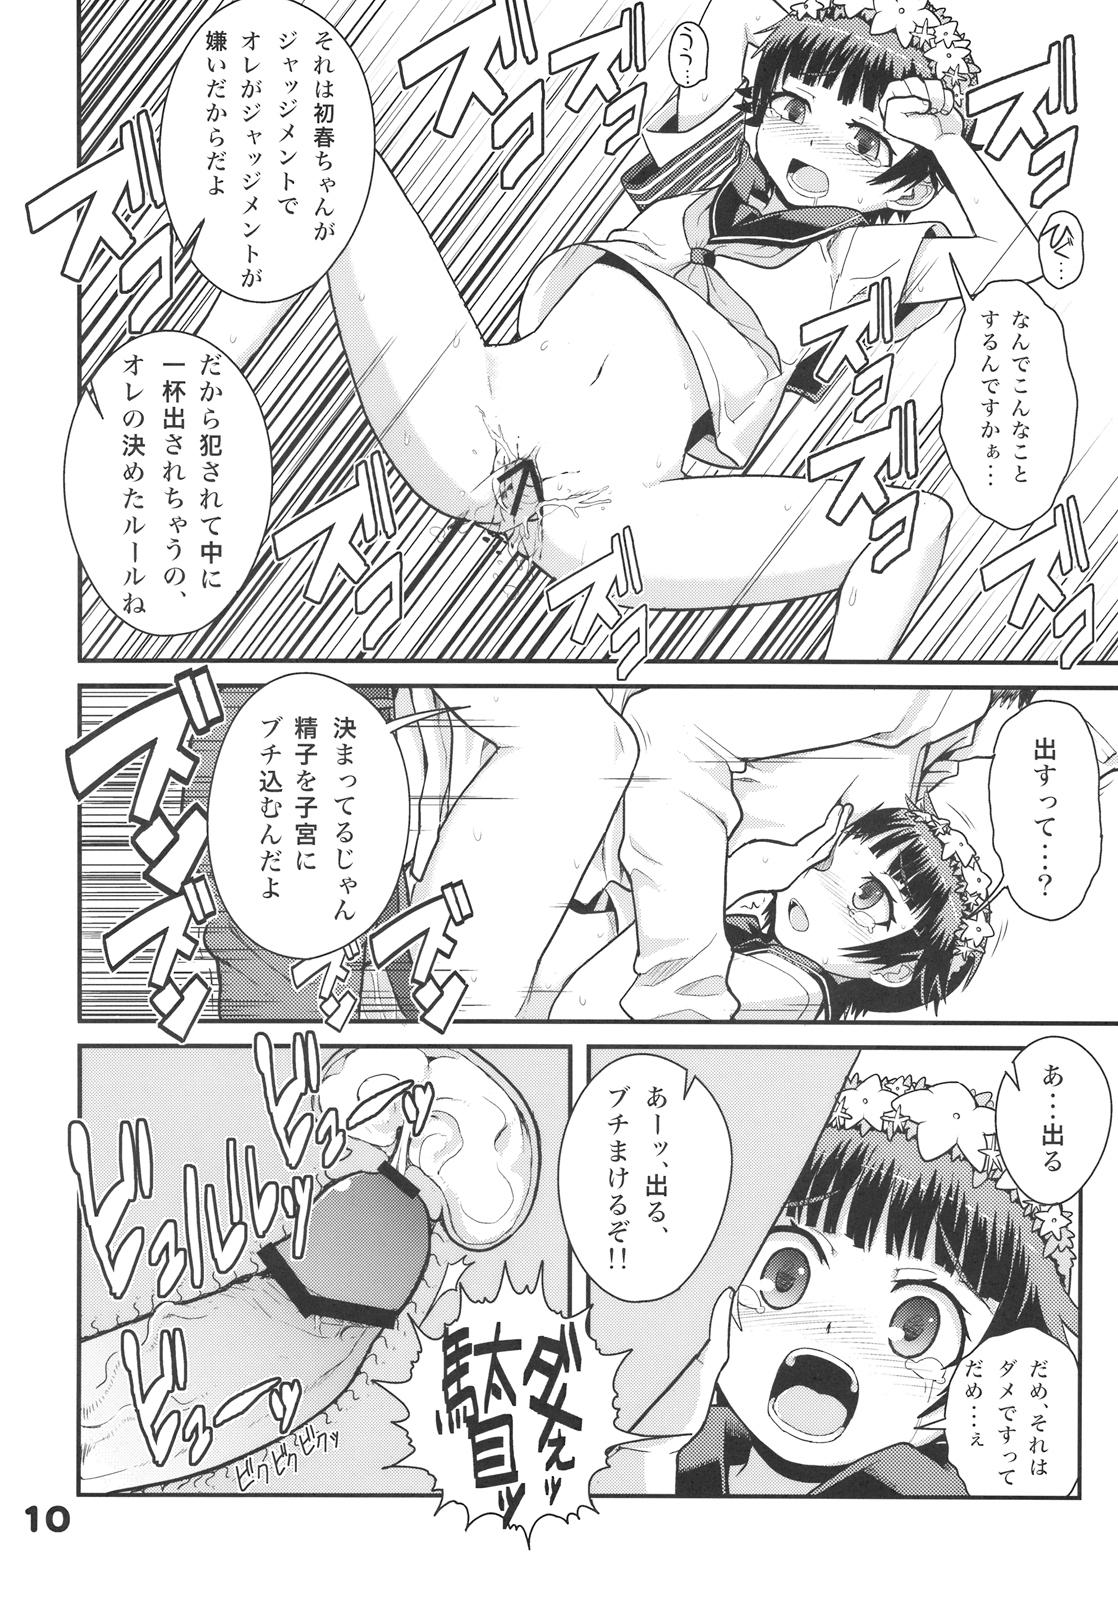 Gostosa RUST JUDGMENT - Toaru kagaku no railgun Monster - Page 12